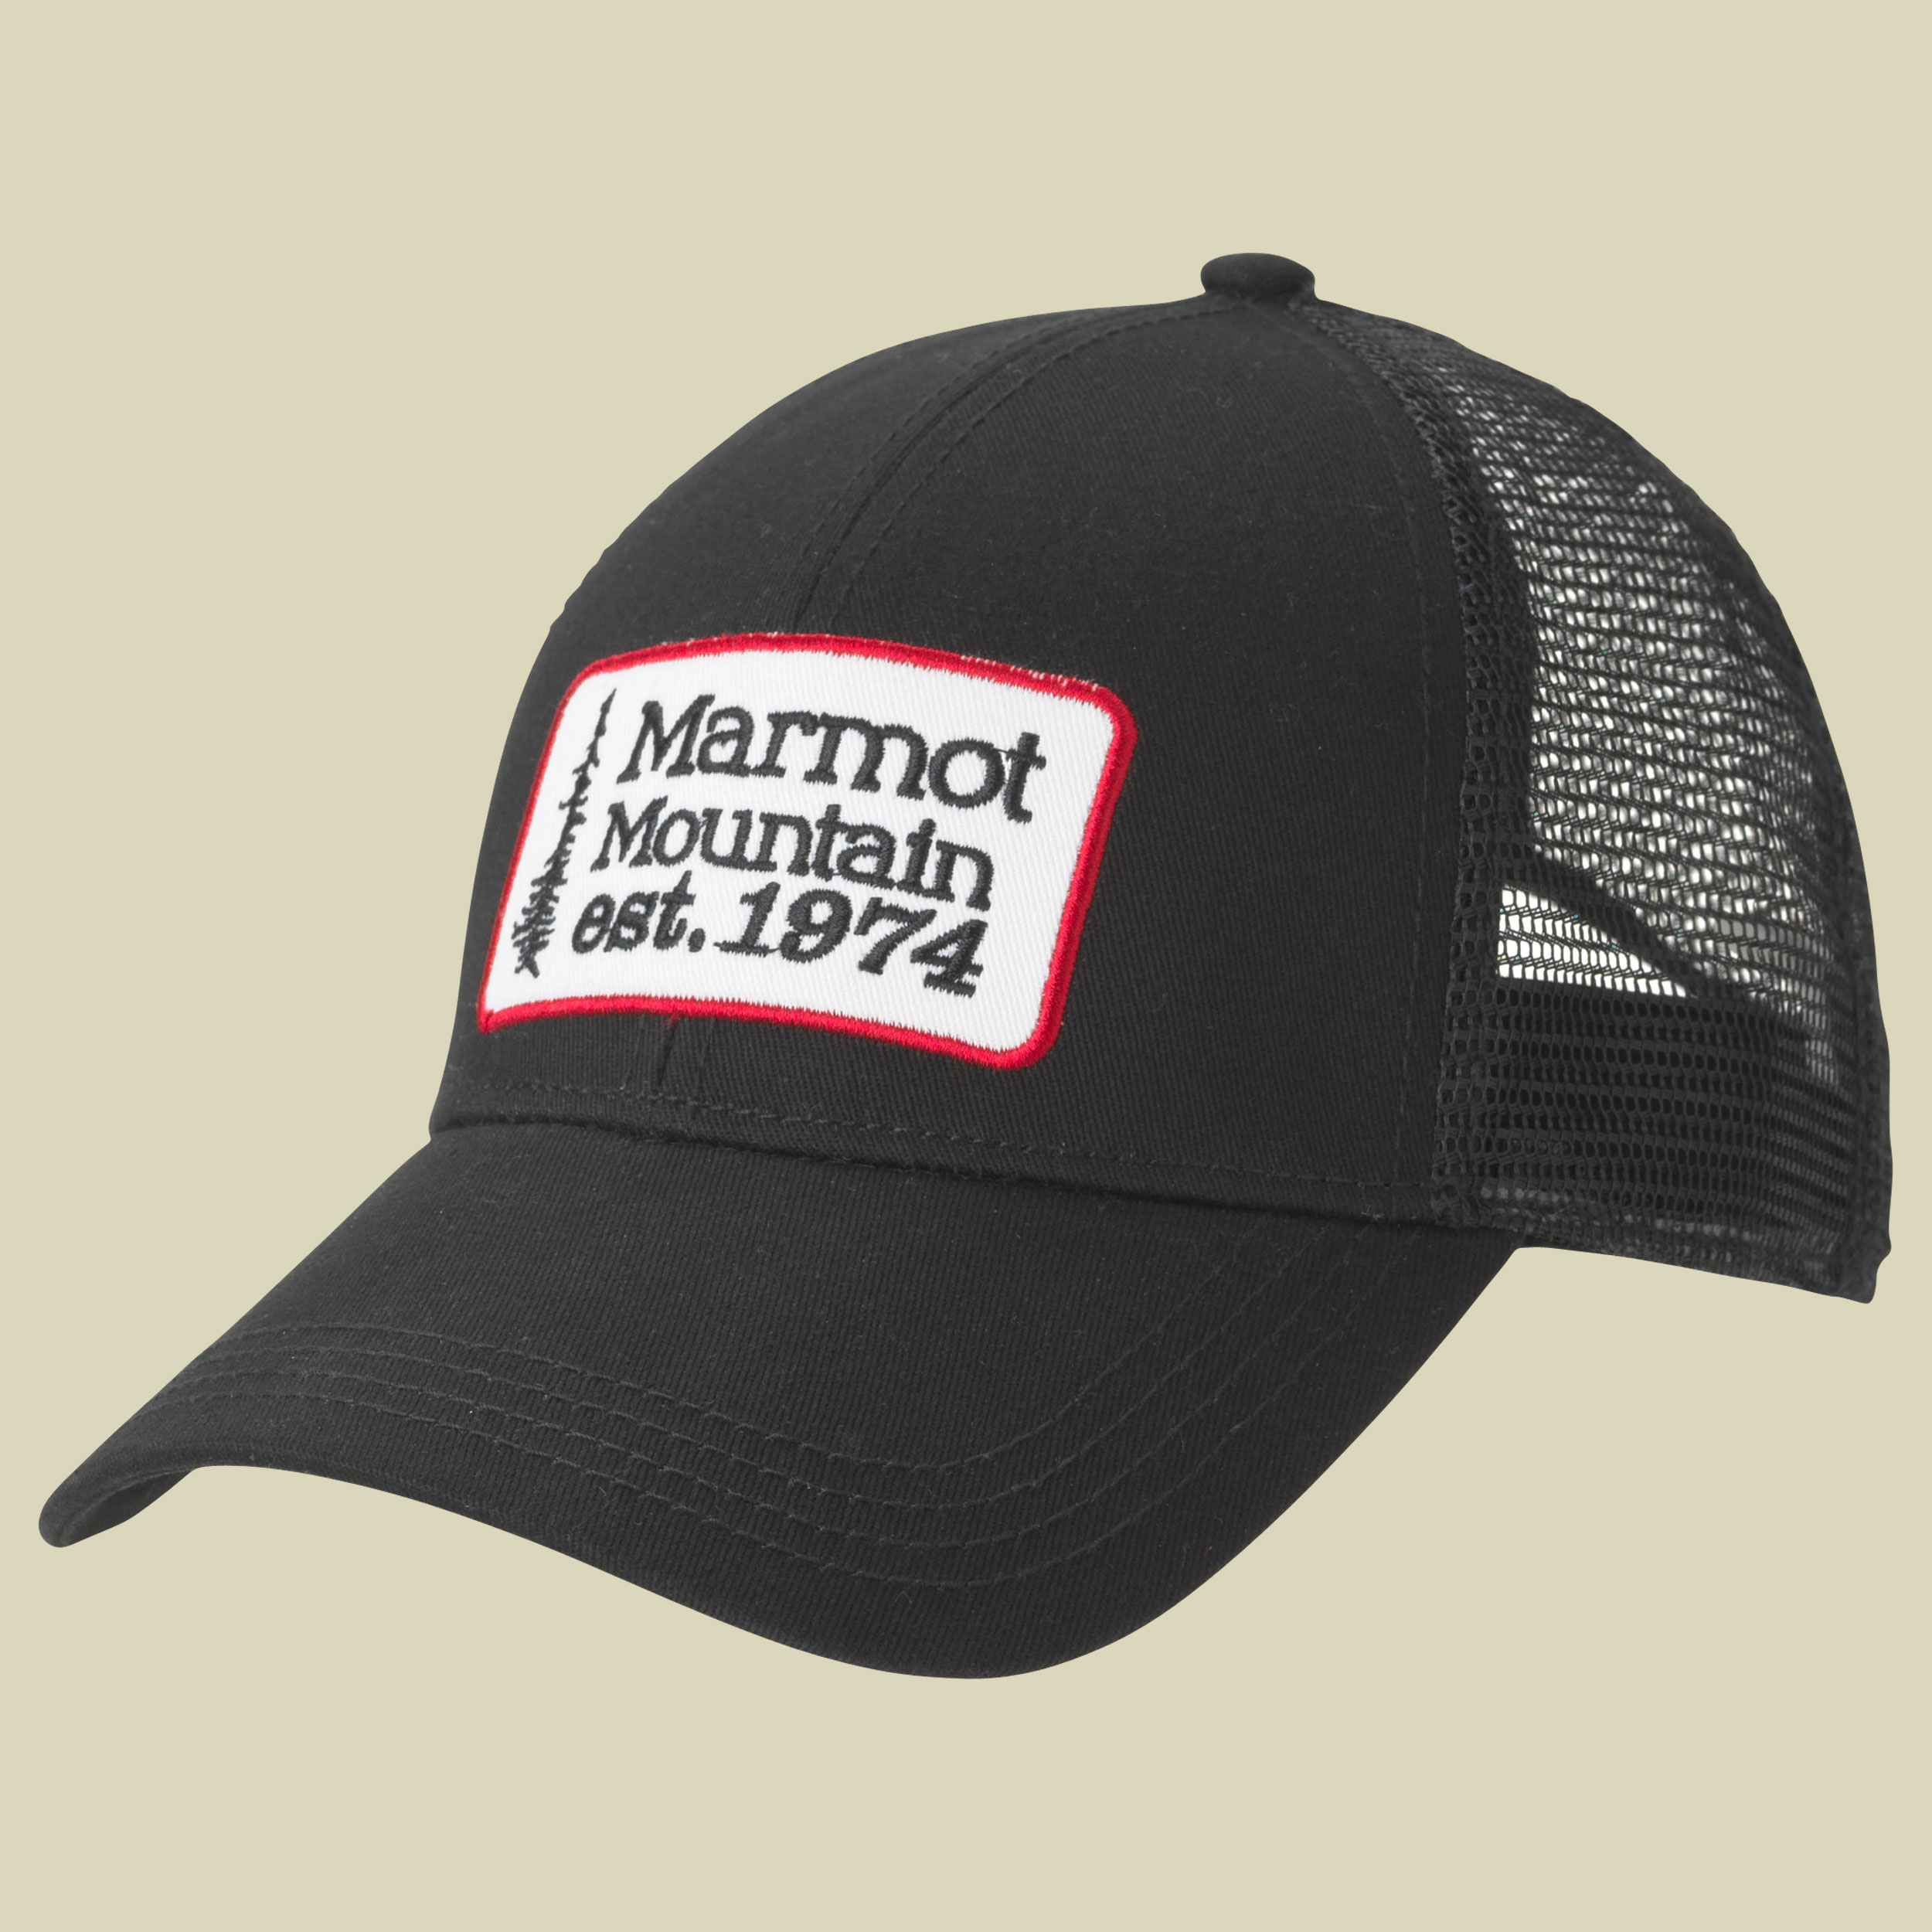 Retro Trucker Hat Größe one size Farbe black